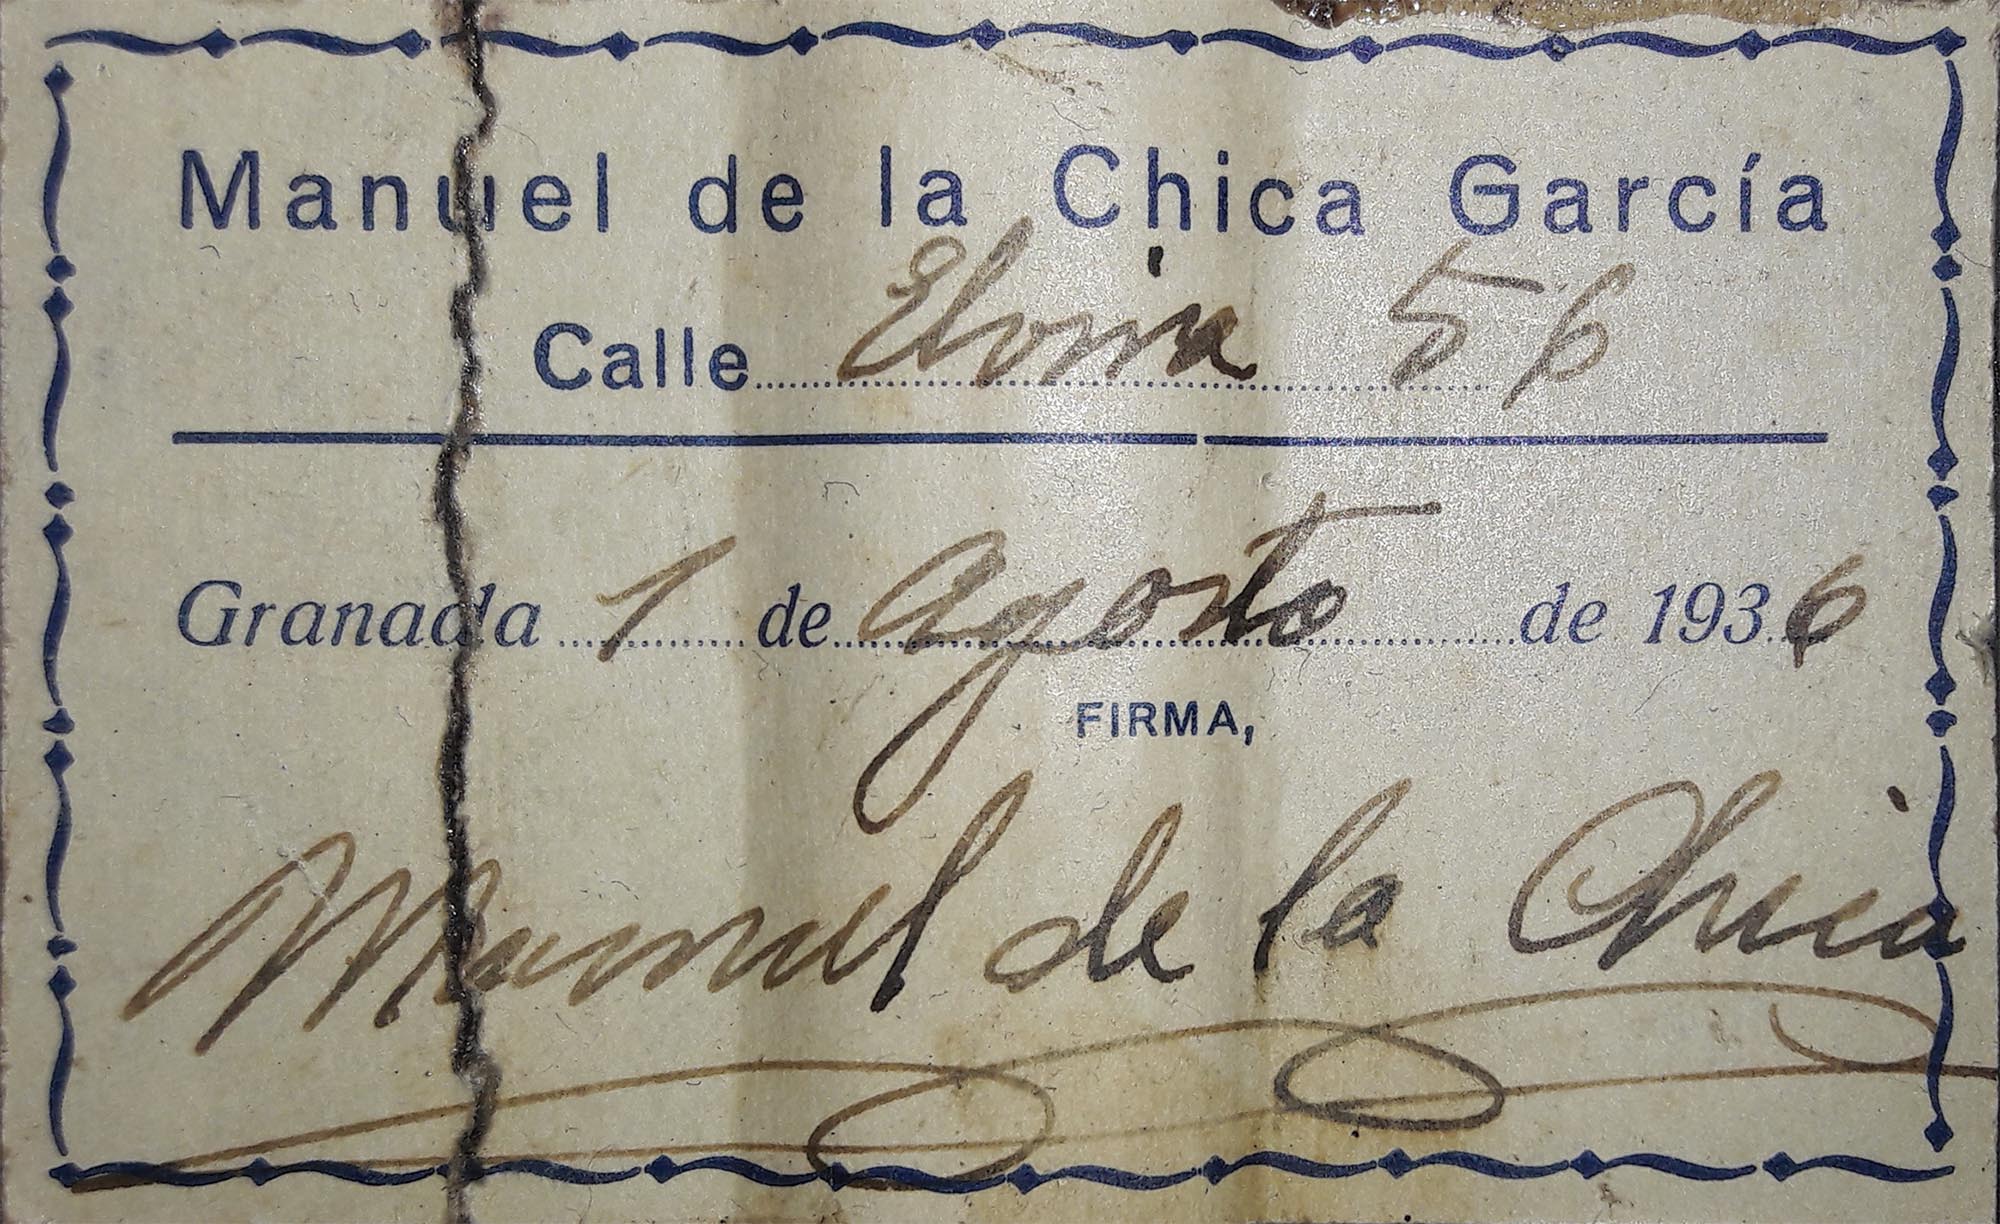 a manuel de la chica 1936 12072018 label